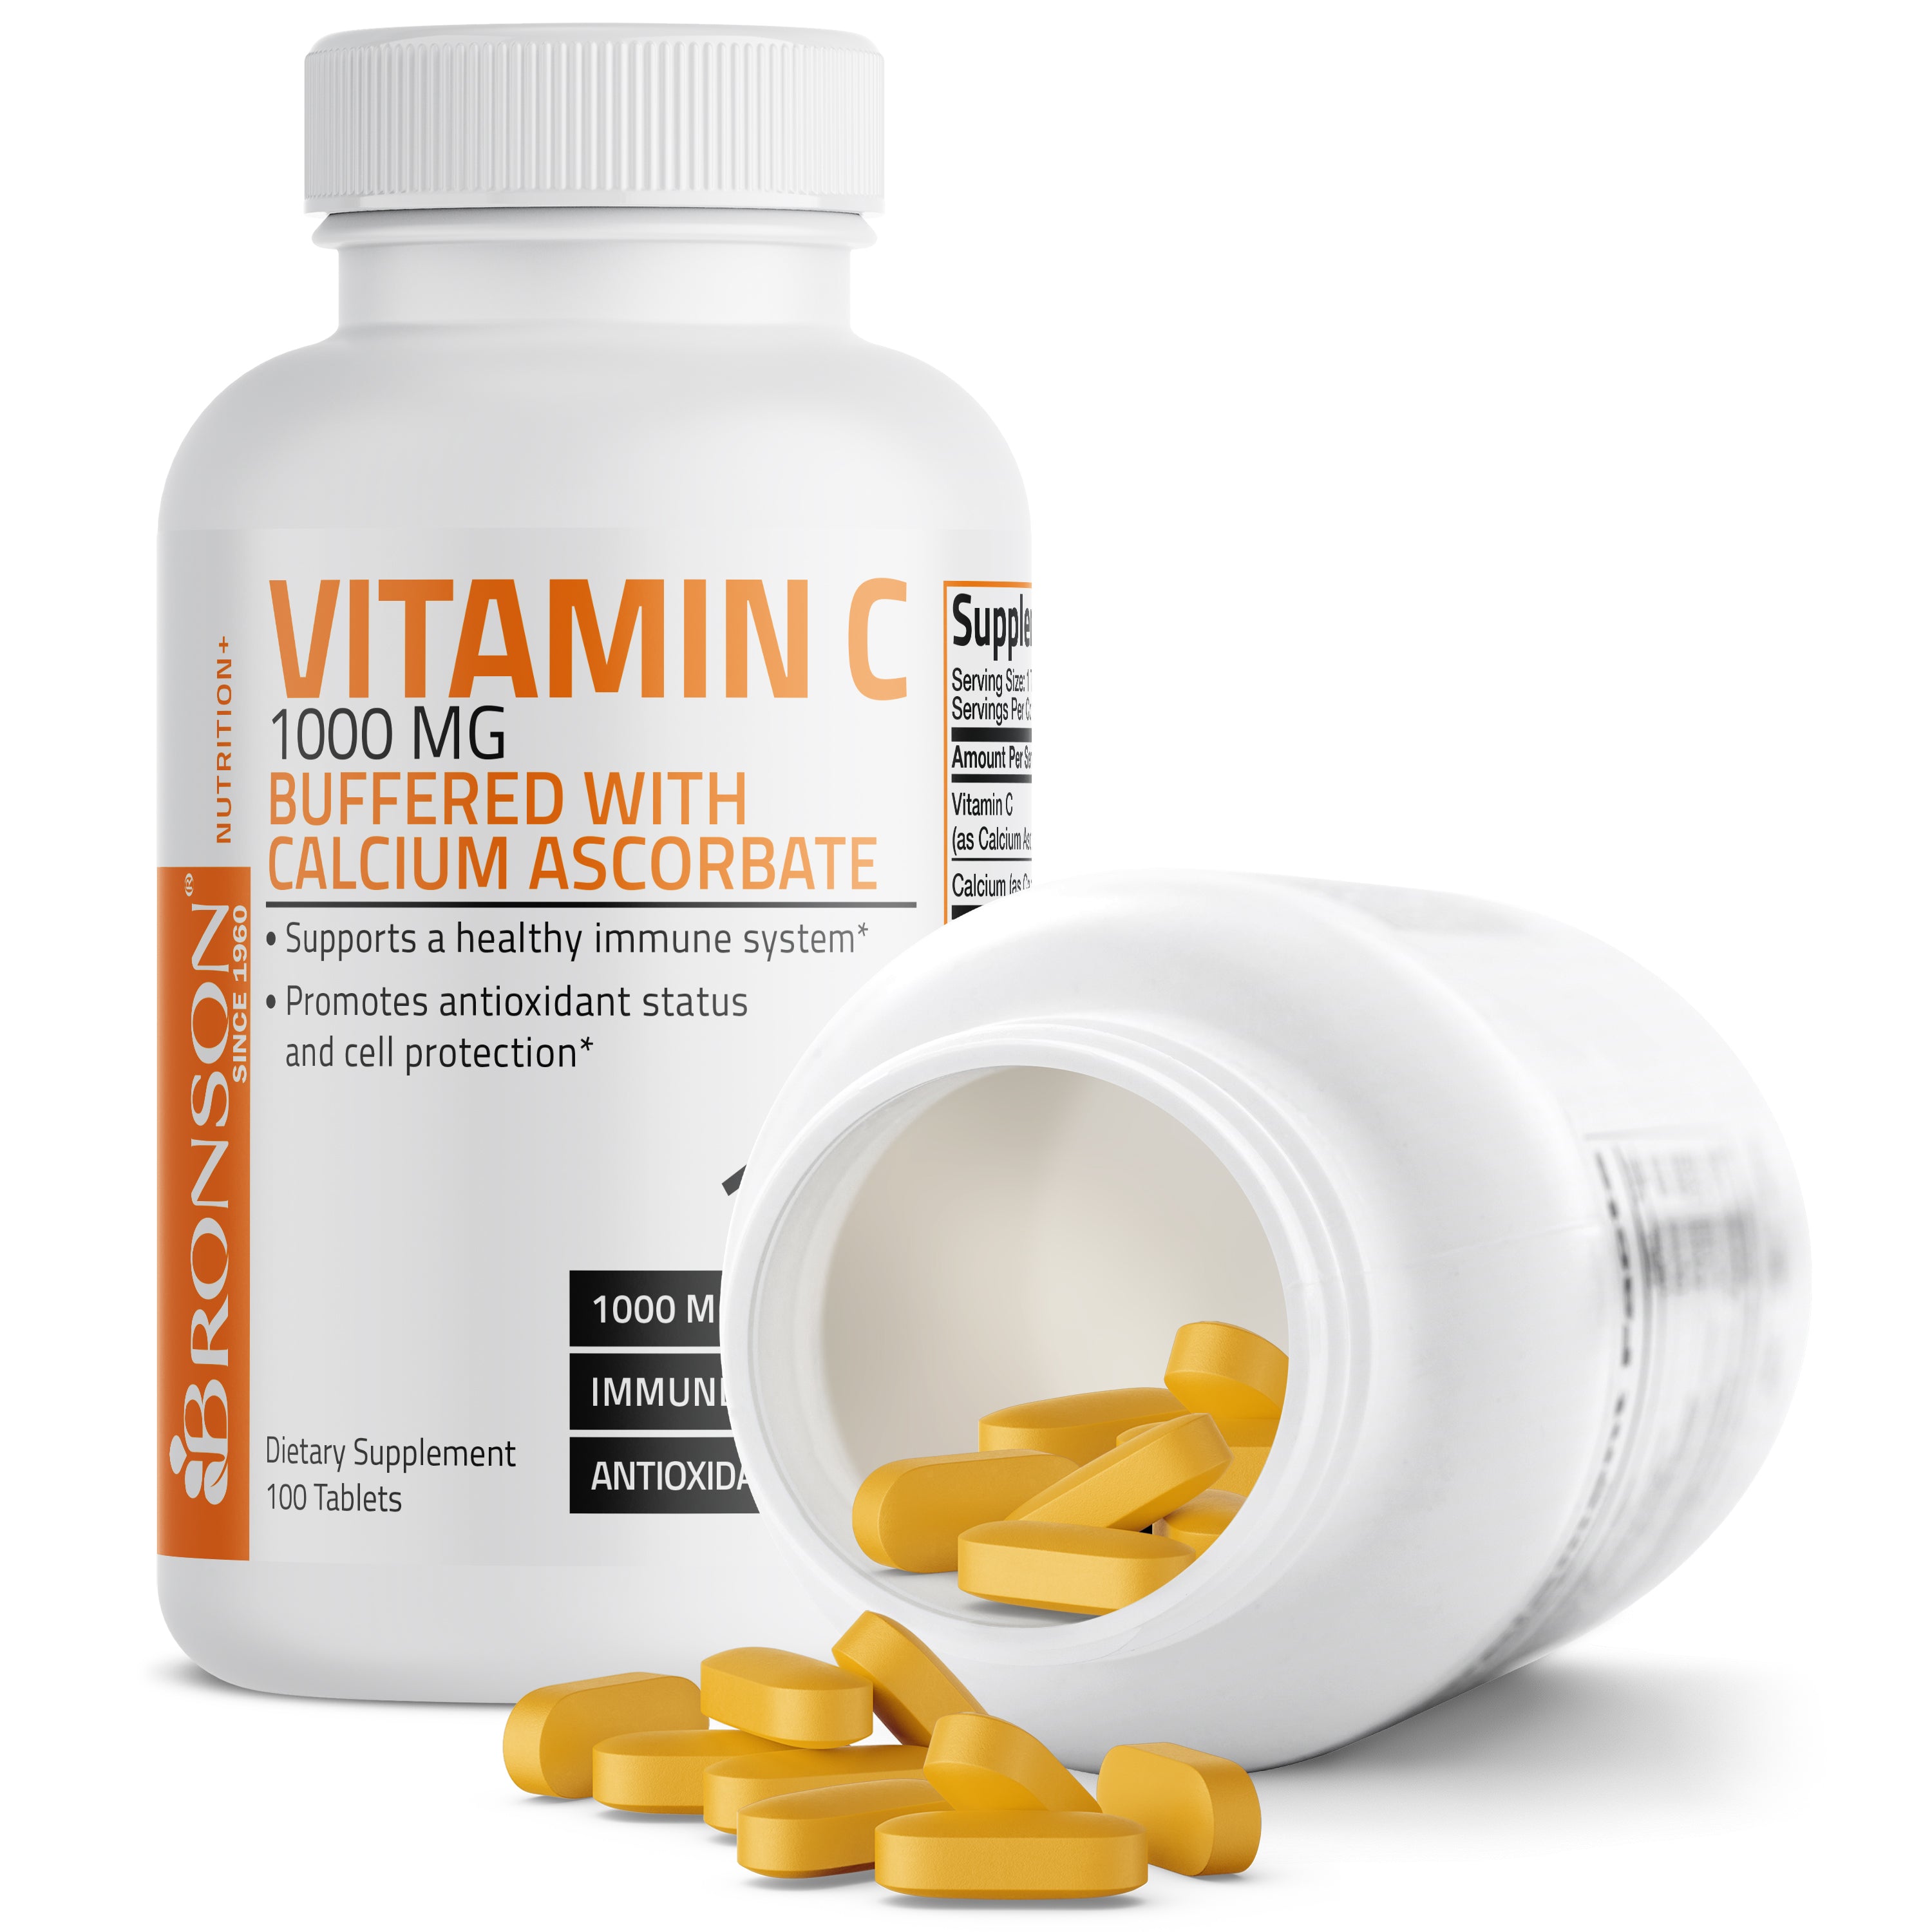 Buffered Vitamin C Calcium Ascorbate - 1,000 mg view 10 of 6